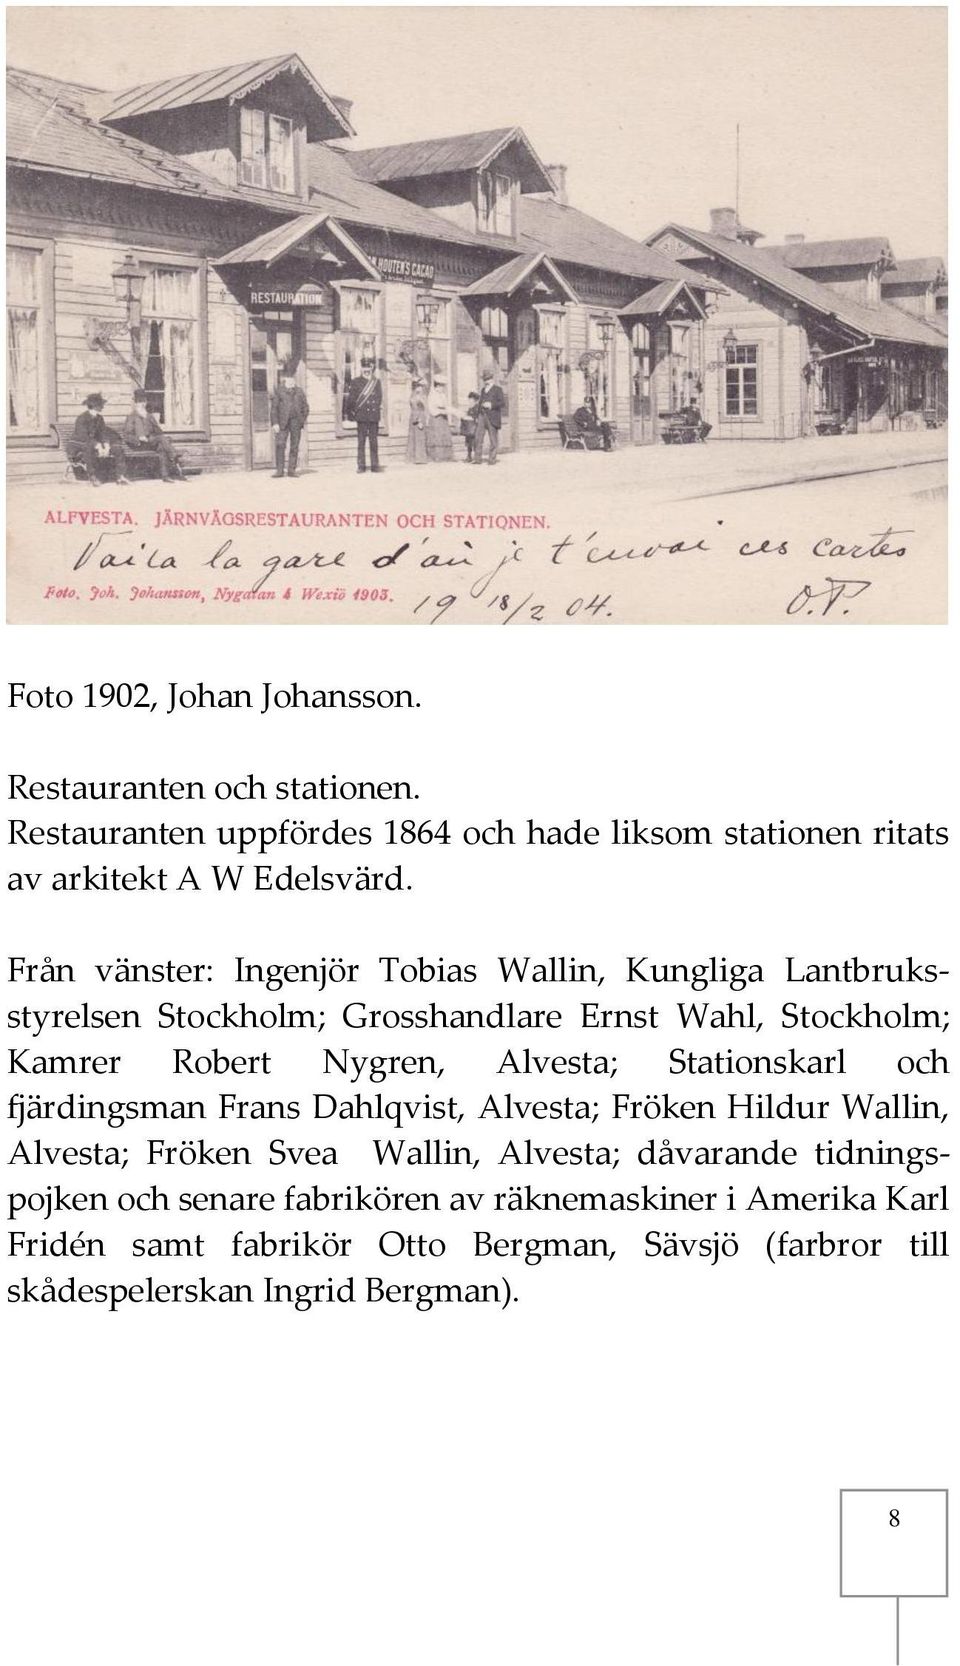 Alvesta; Stationskarl och fjärdingsman Frans Dahlqvist, Alvesta; Fröken Hildur Wallin, Alvesta; Fröken Svea Wallin, Alvesta; dåvarande